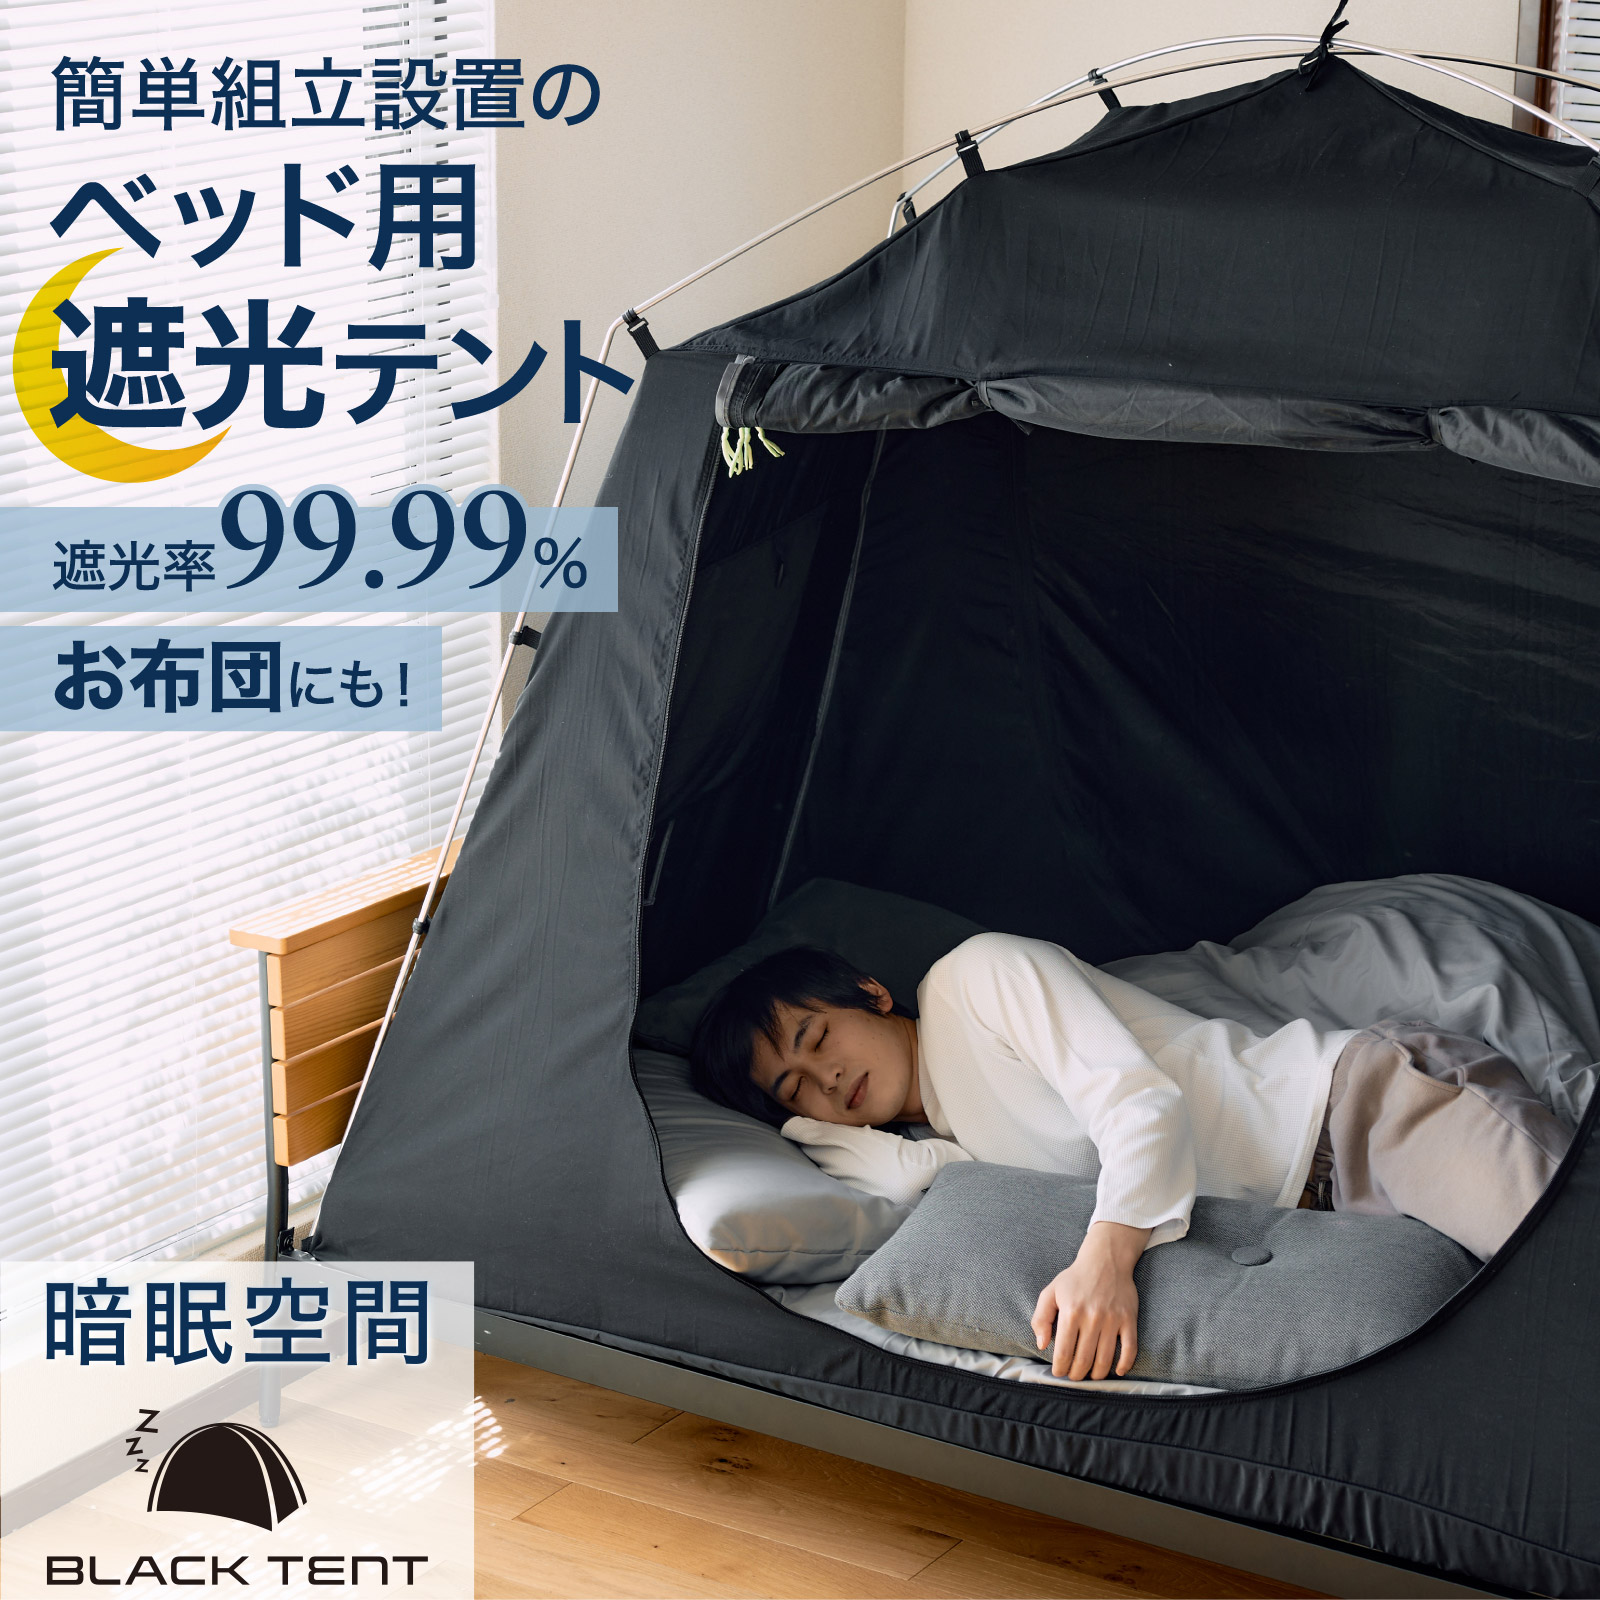 【通常価格】暗眠空間ブラックテント